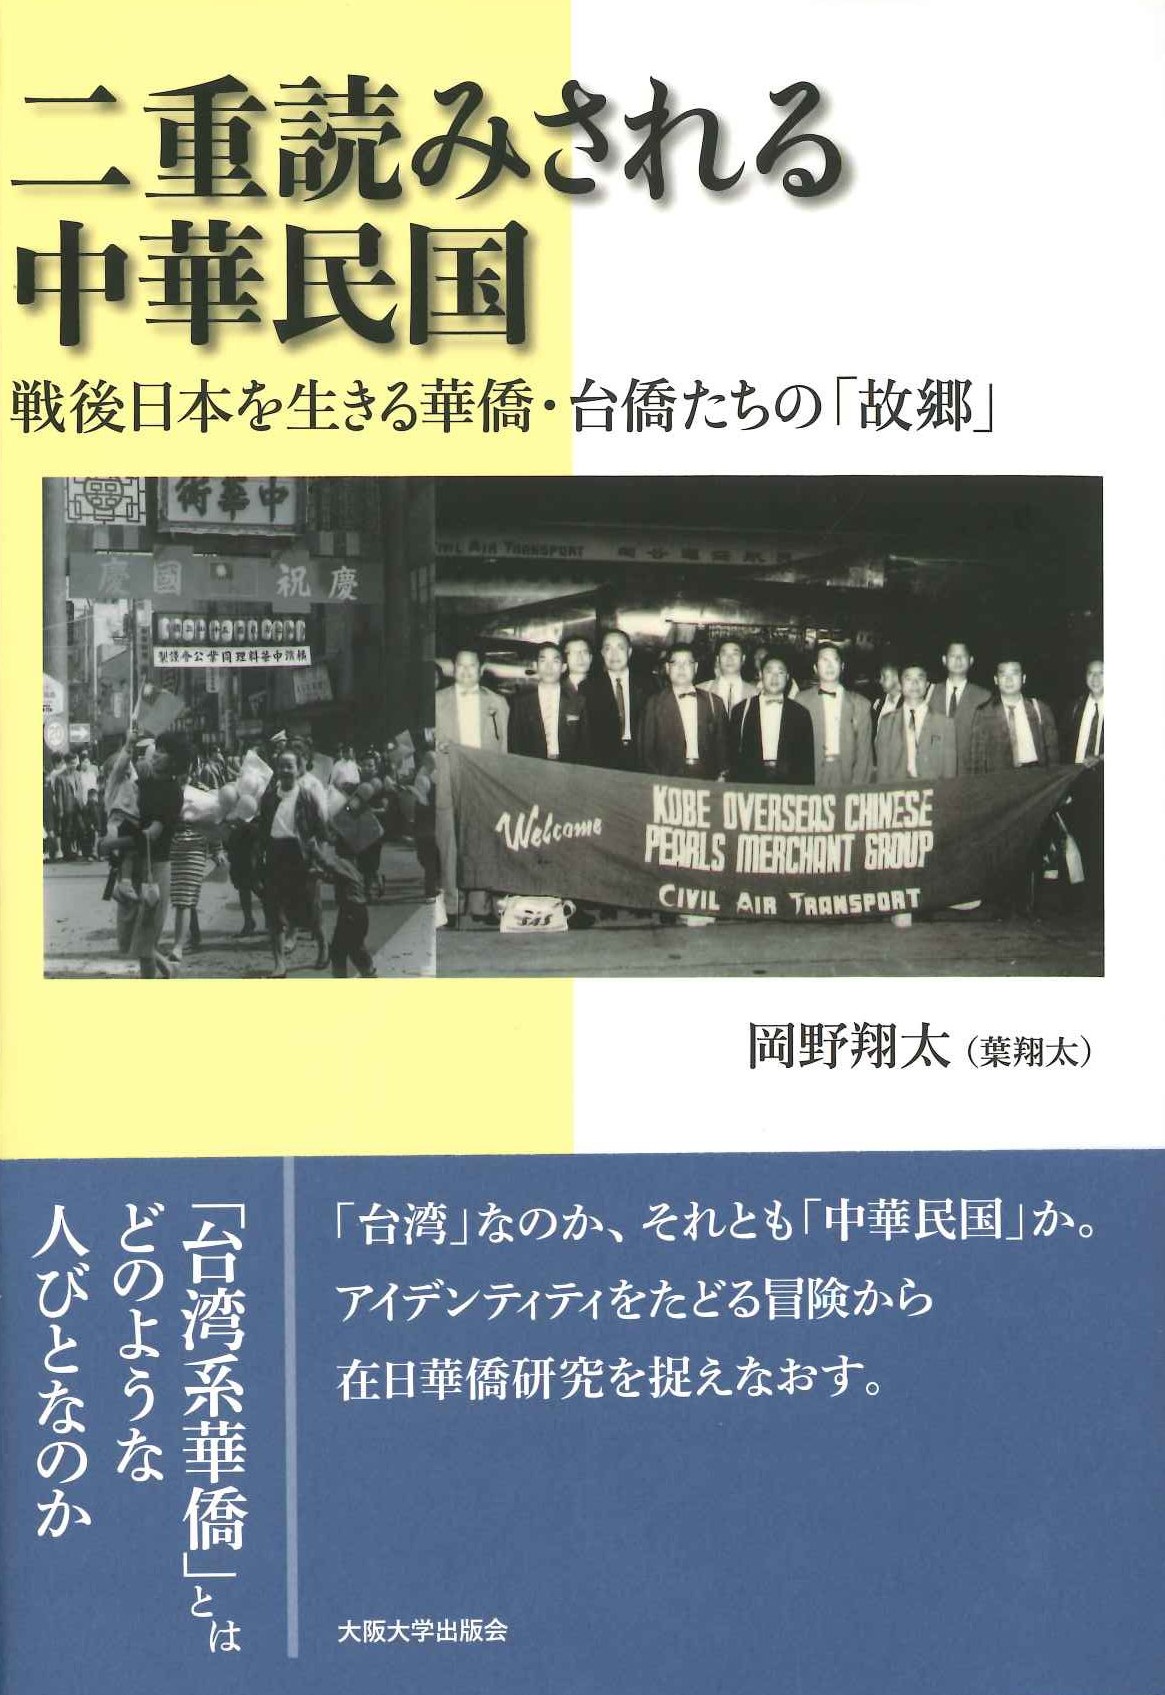 二重読みされる中華民国 戦後日本を生きる華僑・台僑たちの「故郷」